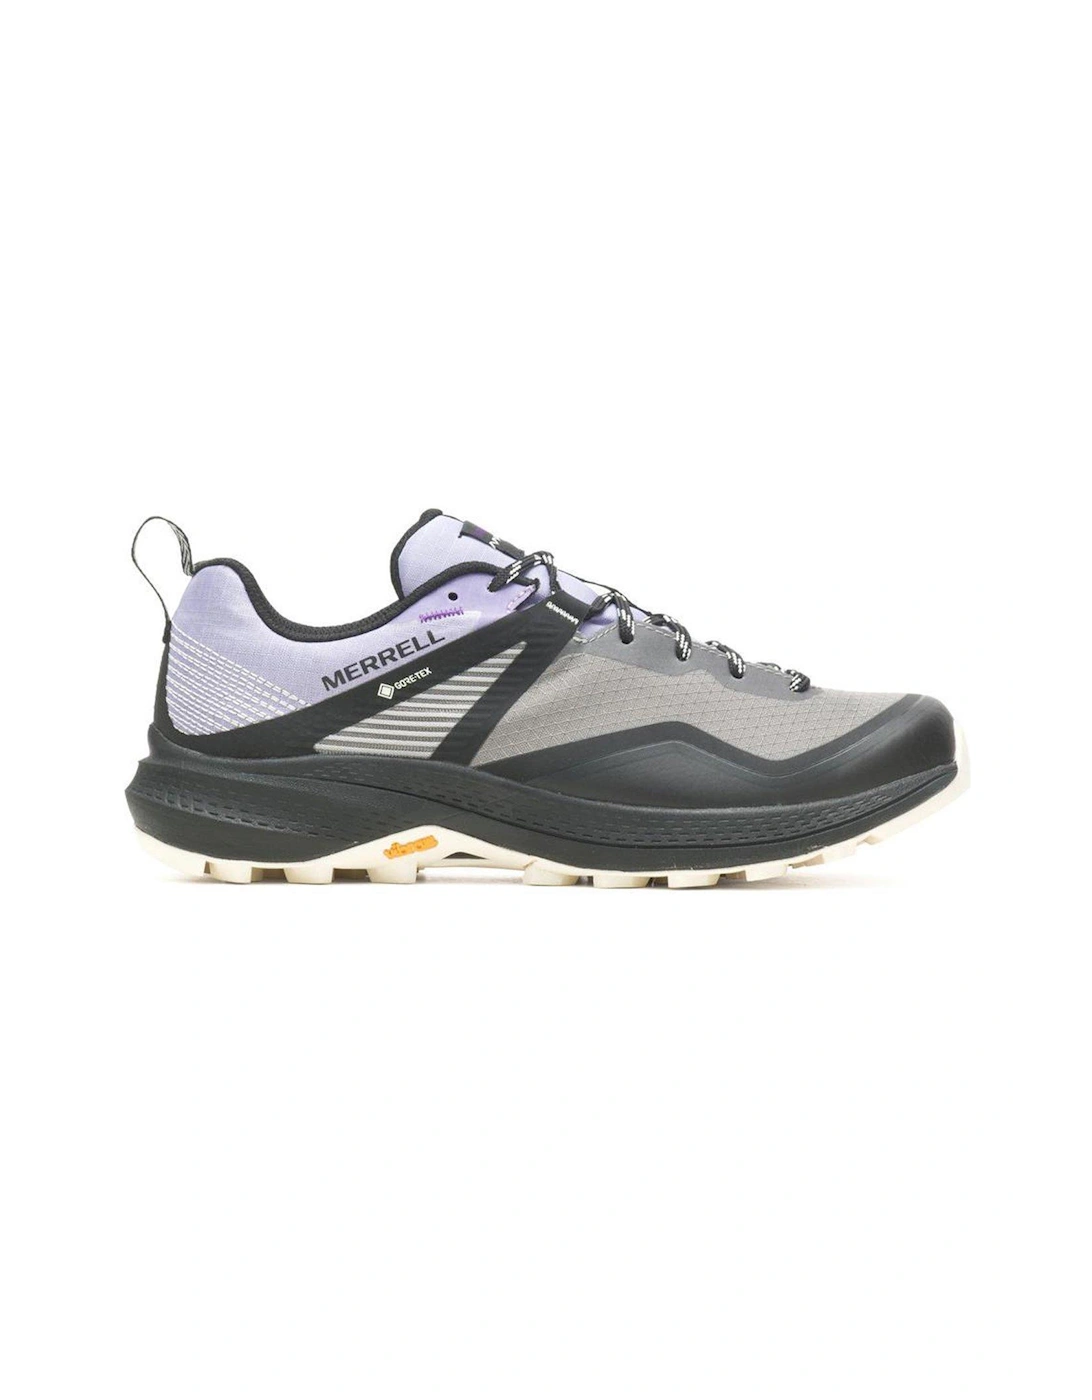 Womens Mqm 3 Goretex Hiking Shoes - Grey/light Purple, 7 of 6